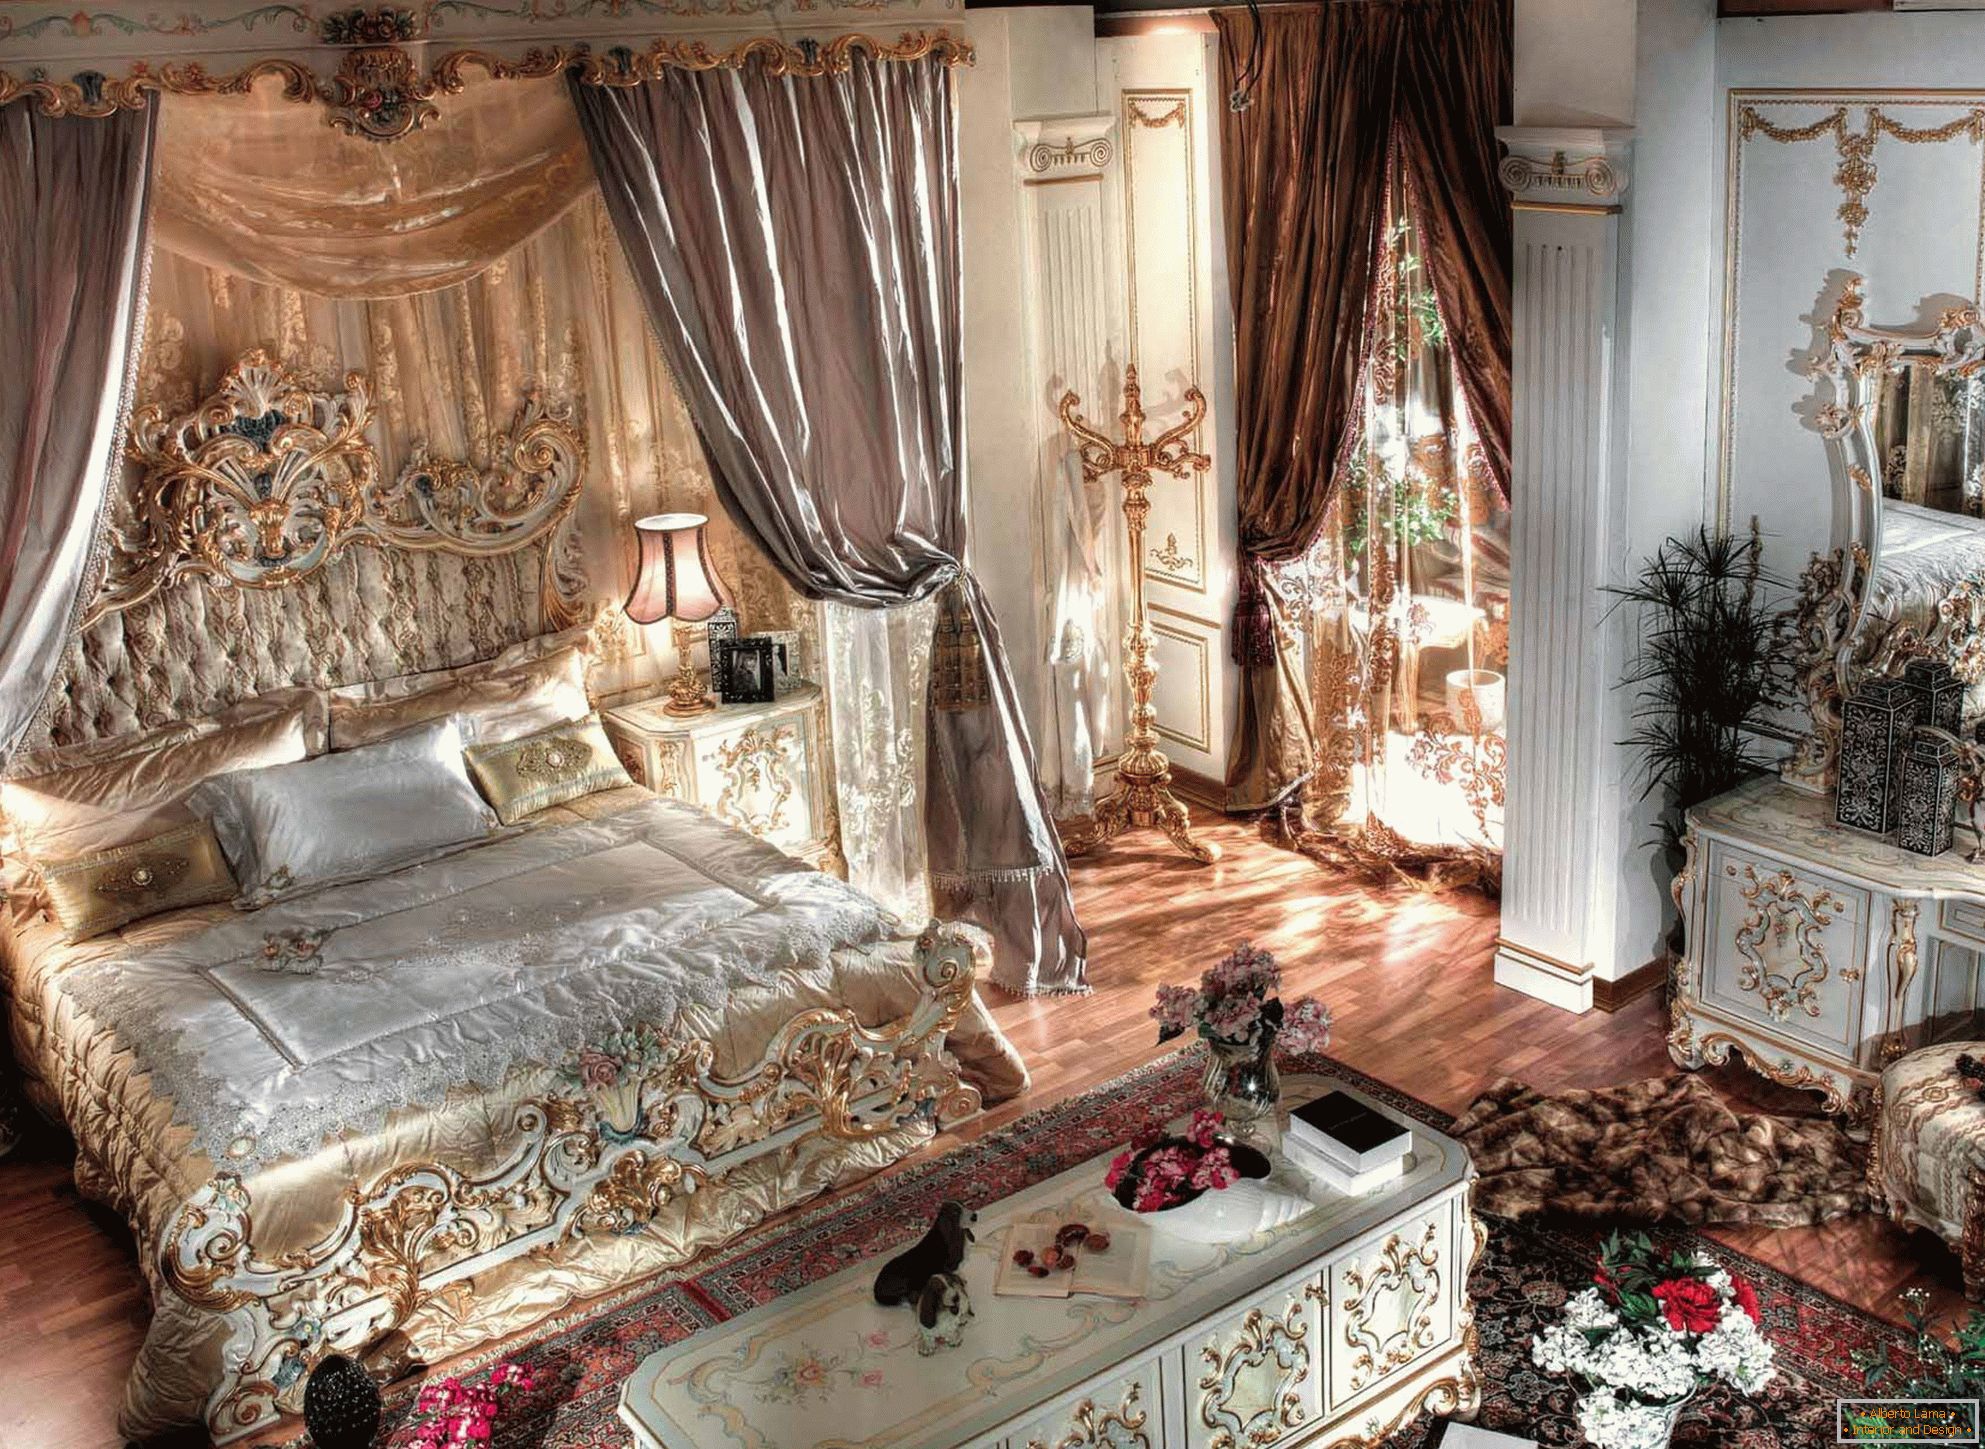 Luxuriöses barockes Schlafzimmer mit hohen Decken. In der Mitte der Komposition befindet sich ein massives Bett aus Holz mit geschnitztem Rücken.